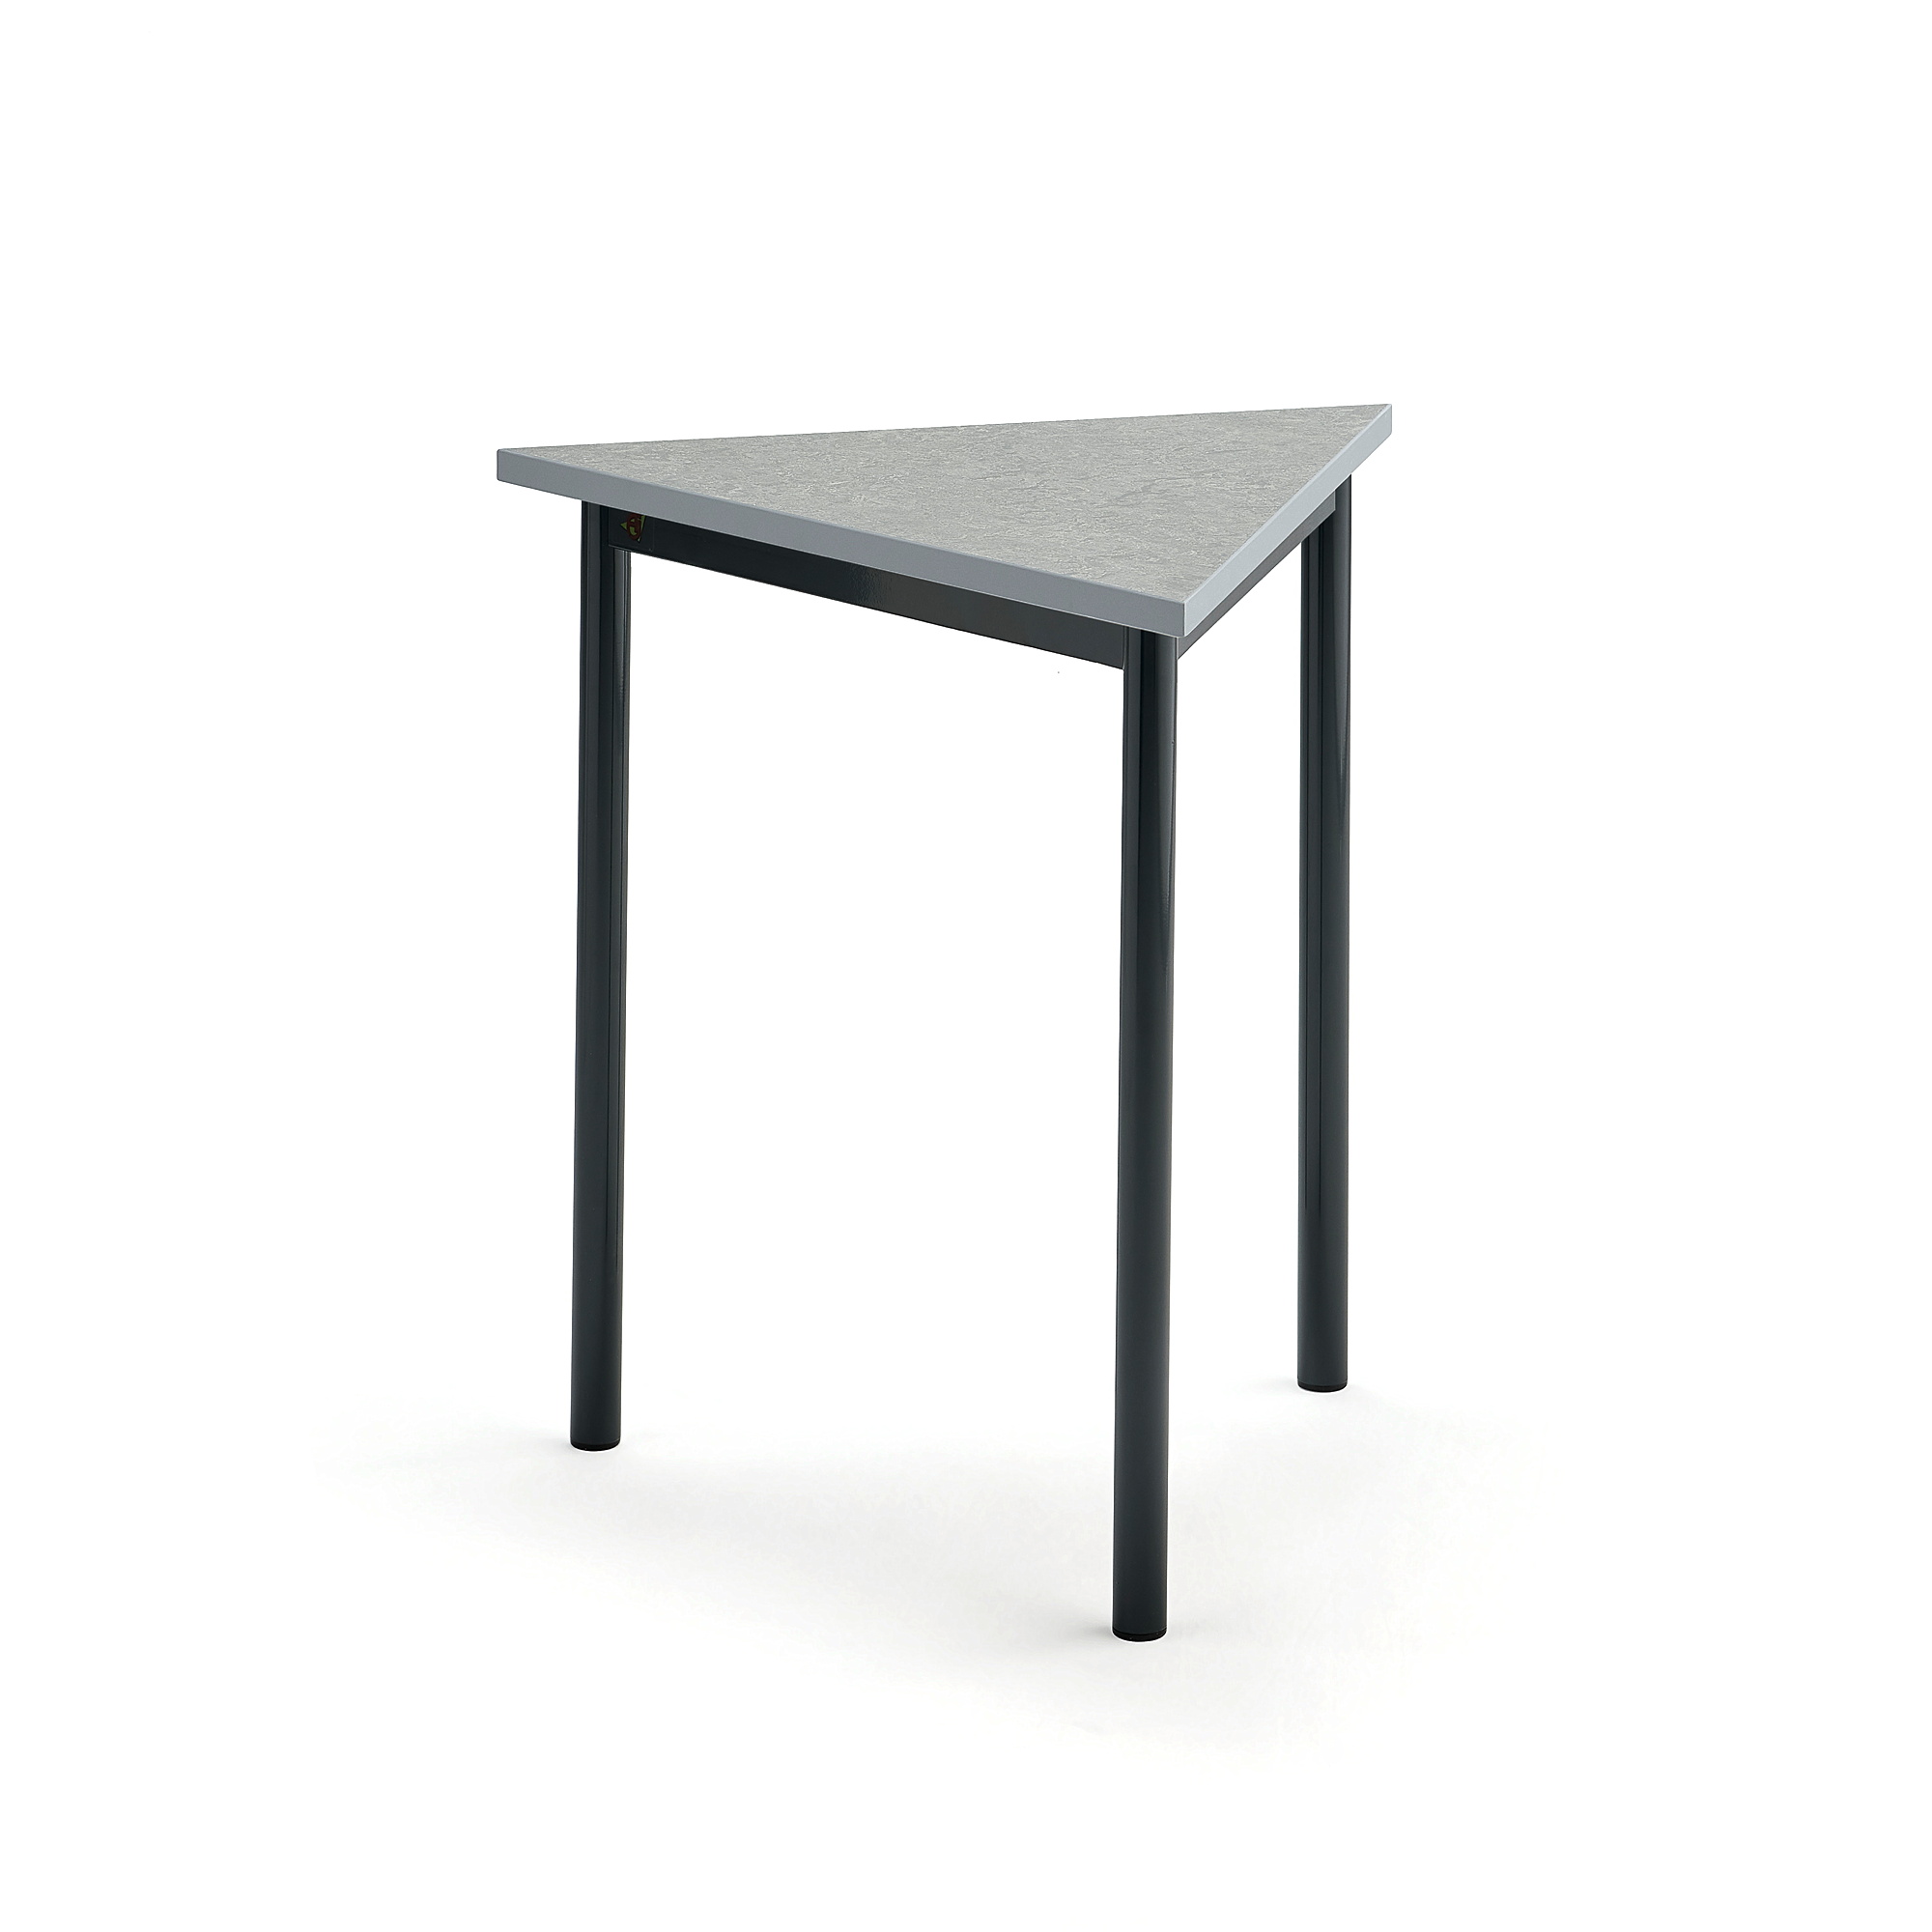 Stůl SONITUS TRIANGEL, 700x700x720 mm, antracitově šedé nohy, deska s linoleem, šedá